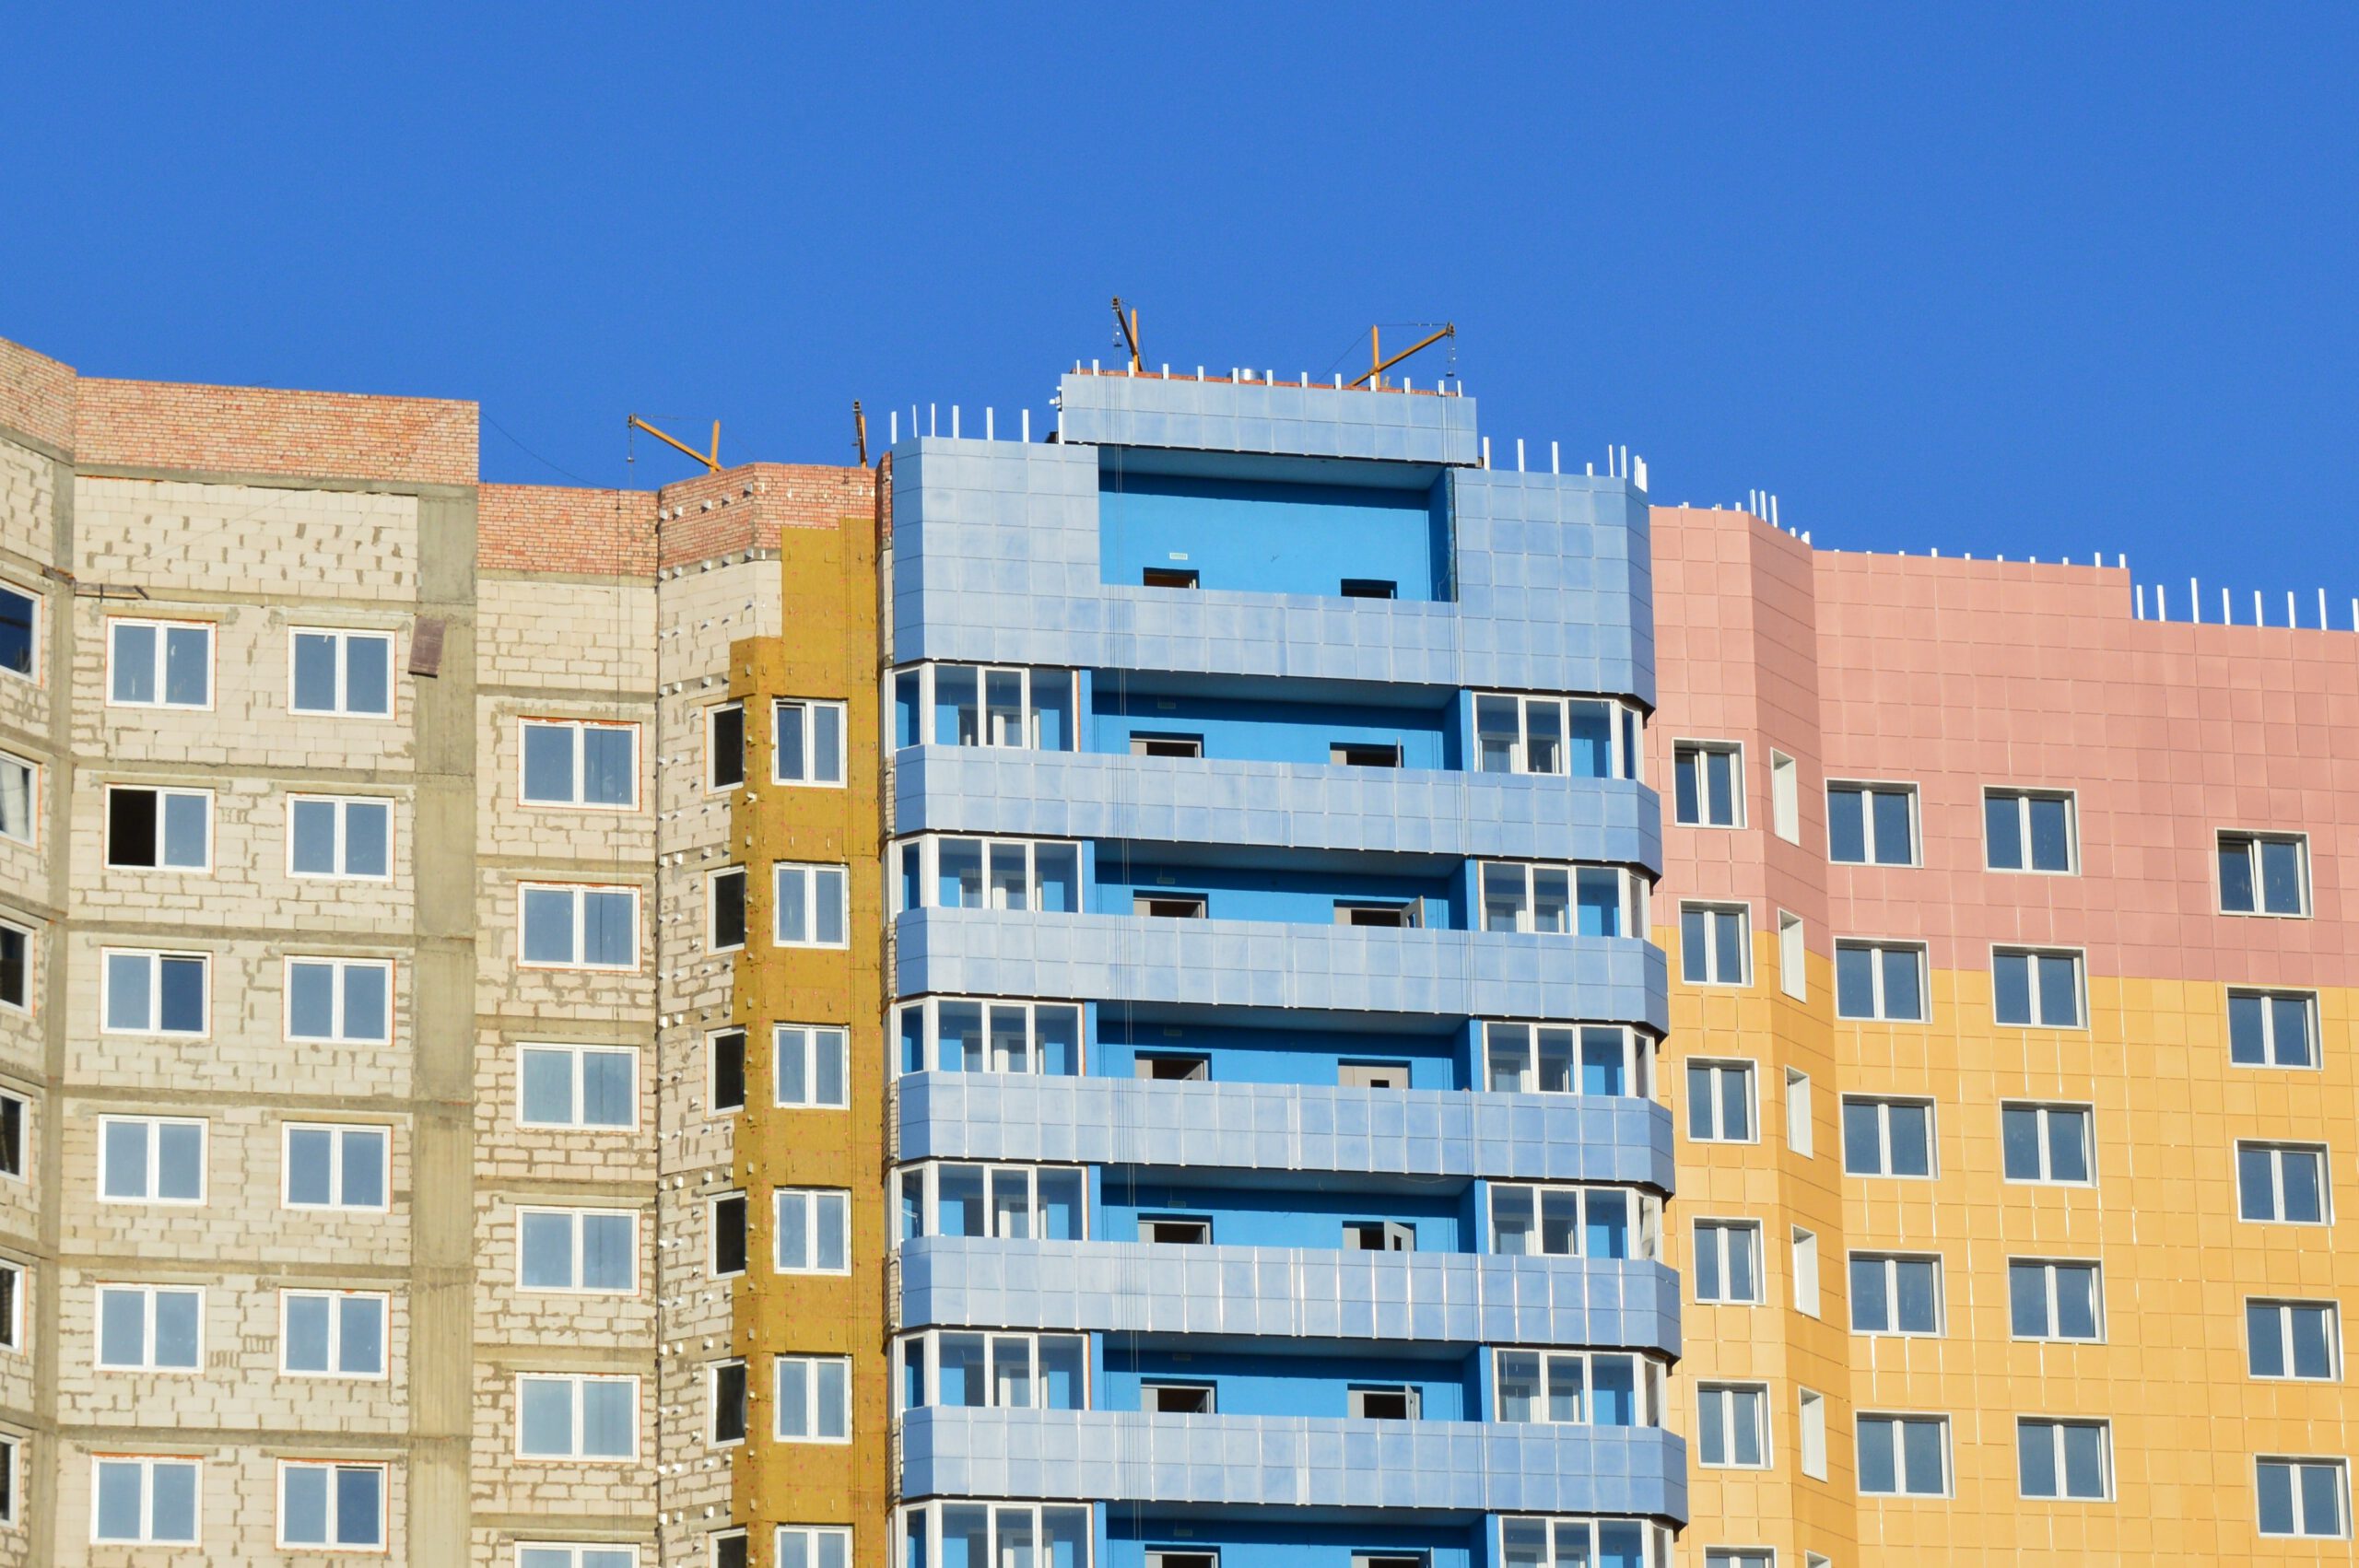 Kolorowy blok mieszkalny z balkonami